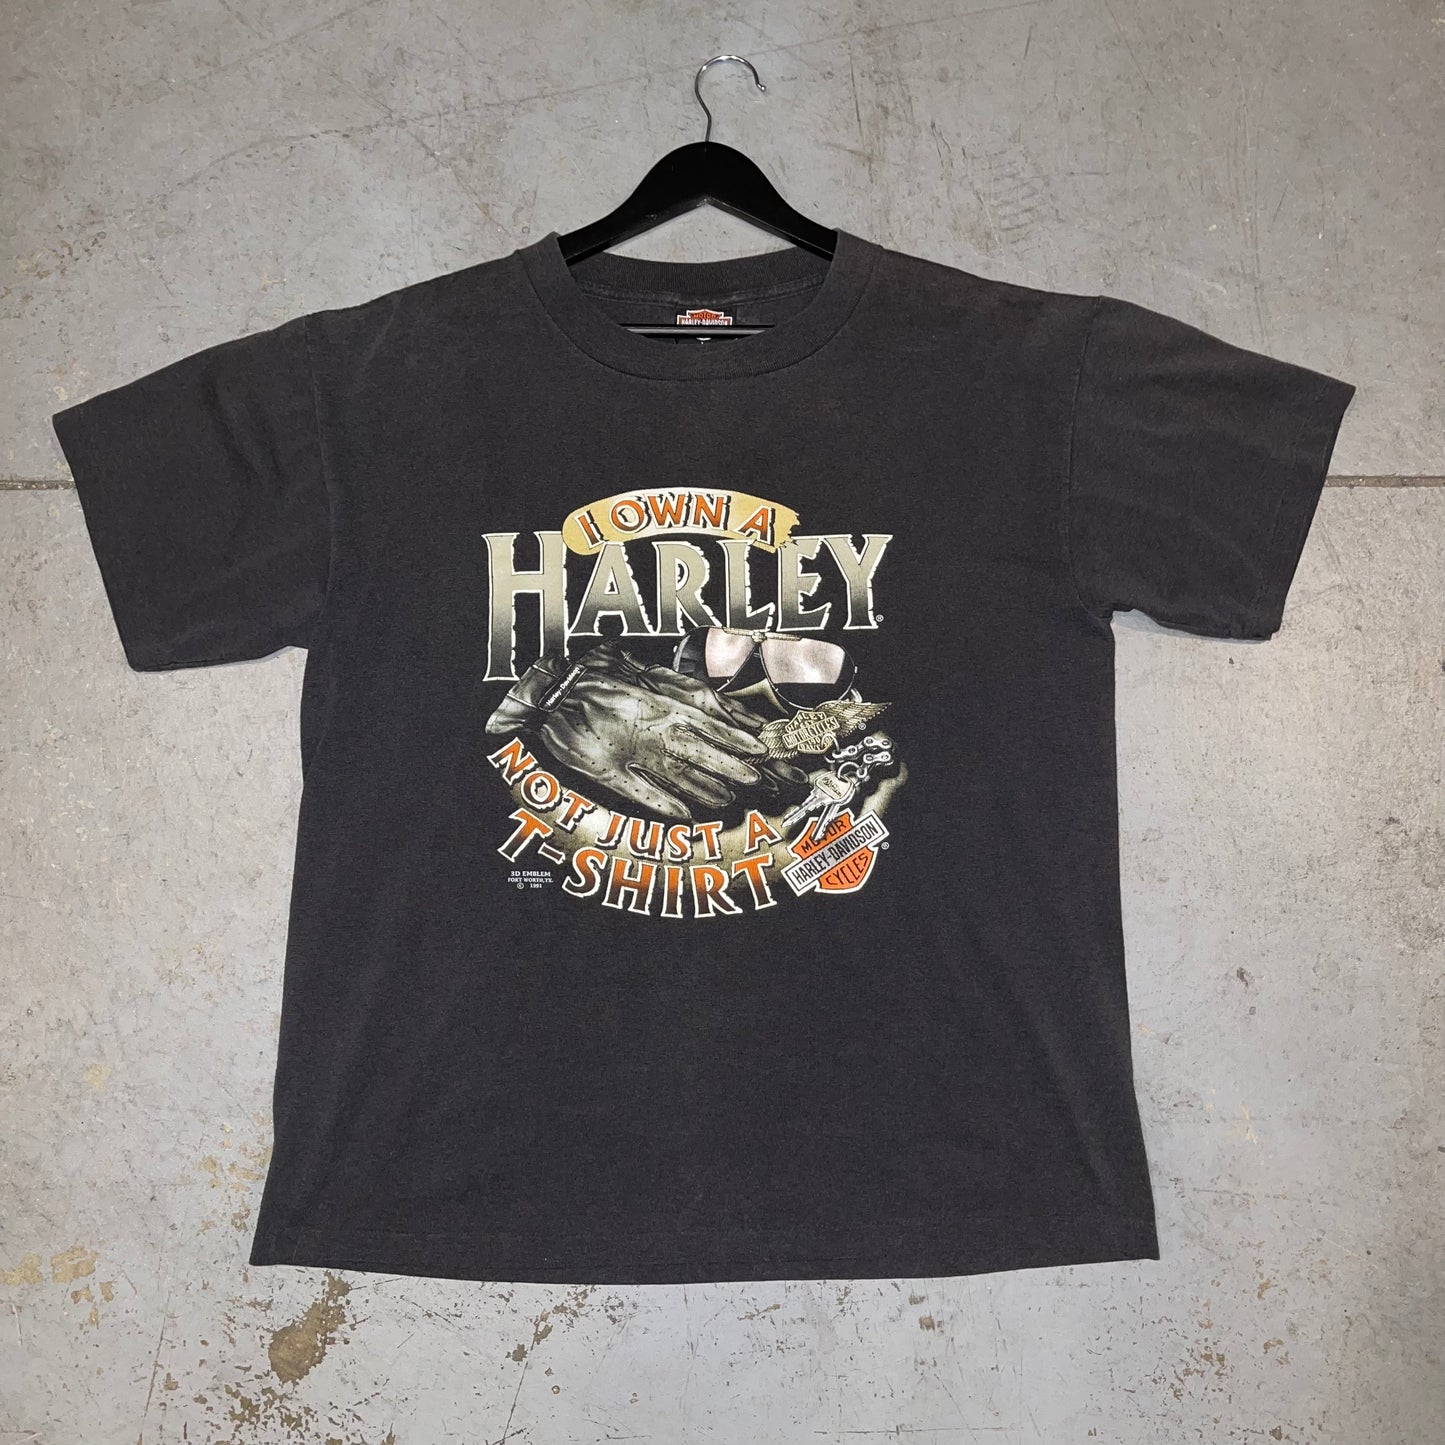 Vintage 1991 3D Emblem Harley Davidson Made in the USA T-shirt. Sz L